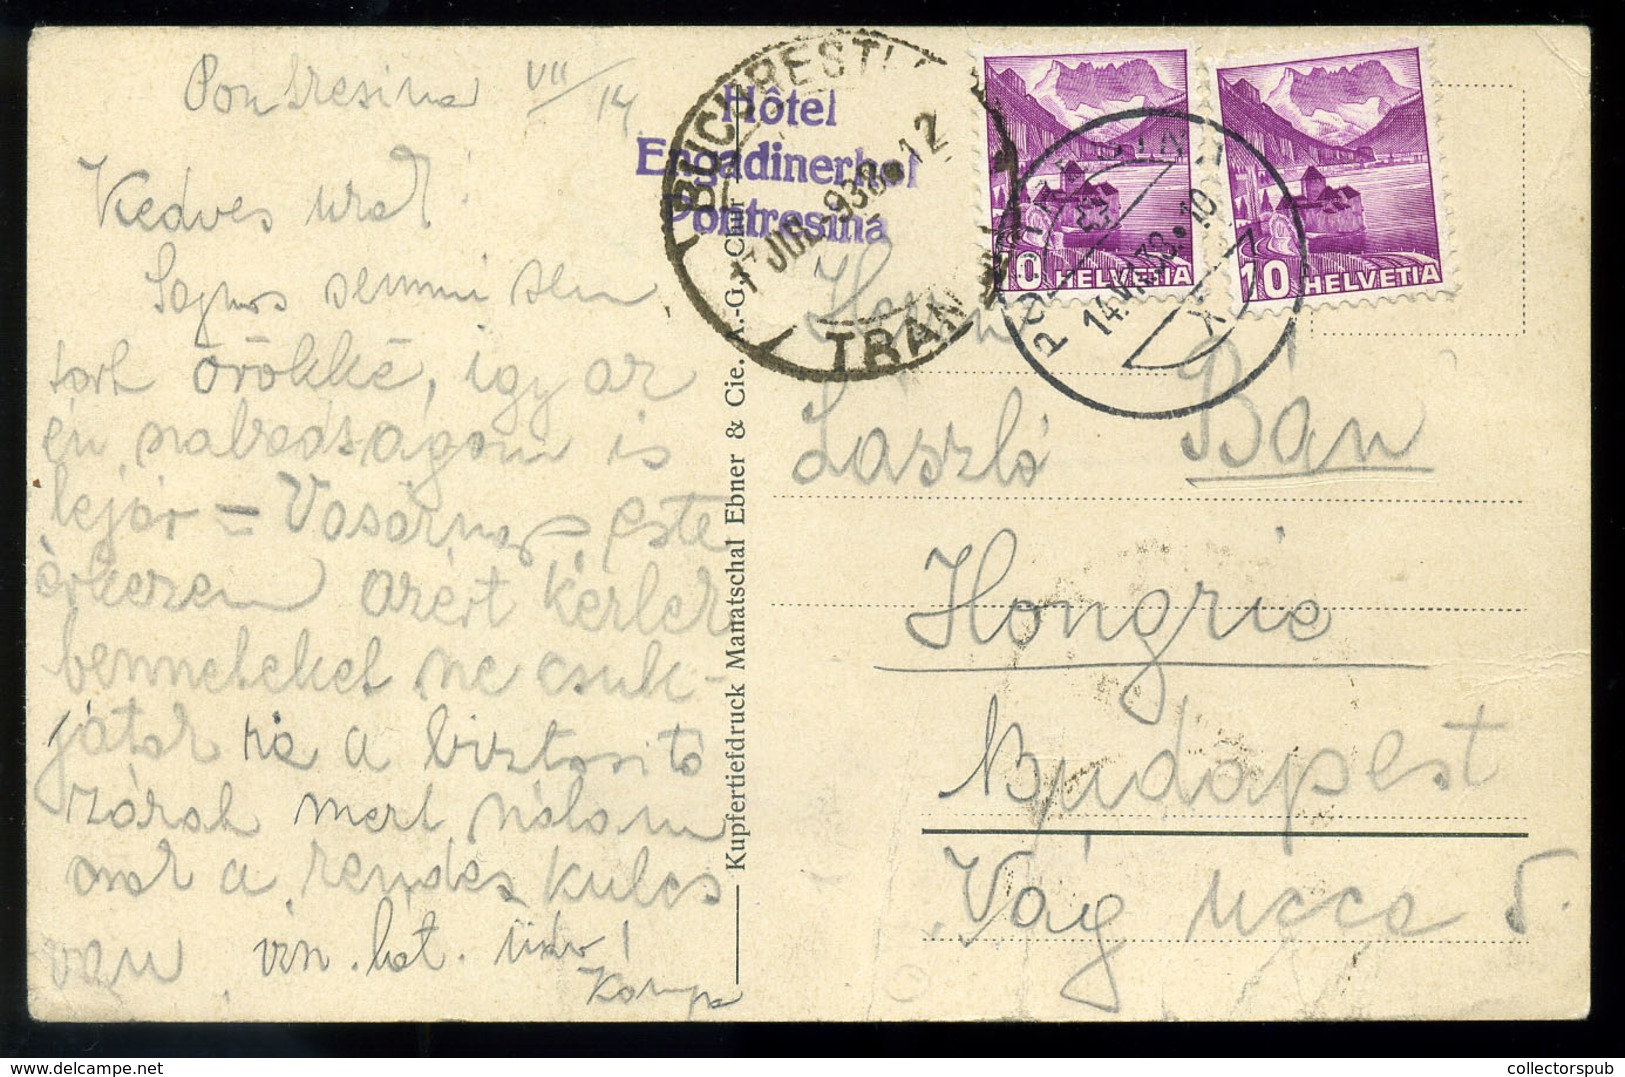 AUSZTRIA 1938. Téves Kézbesítés Budapest Helyett Bukarestbe Küldött Képeslap - Covers & Documents